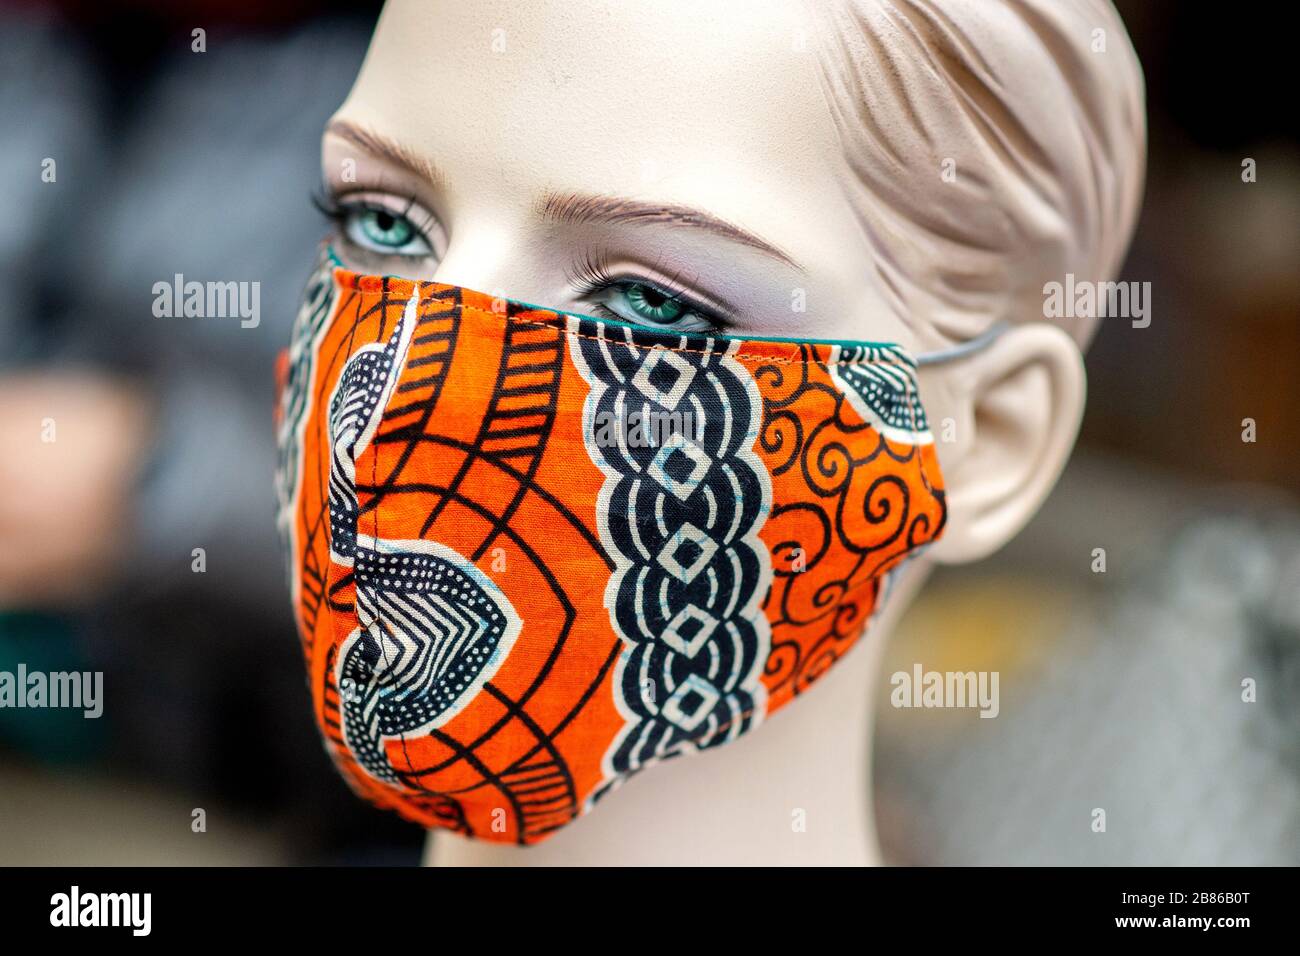 Handgenähte maske -Fotos und -Bildmaterial in hoher Auflösung – Alamy